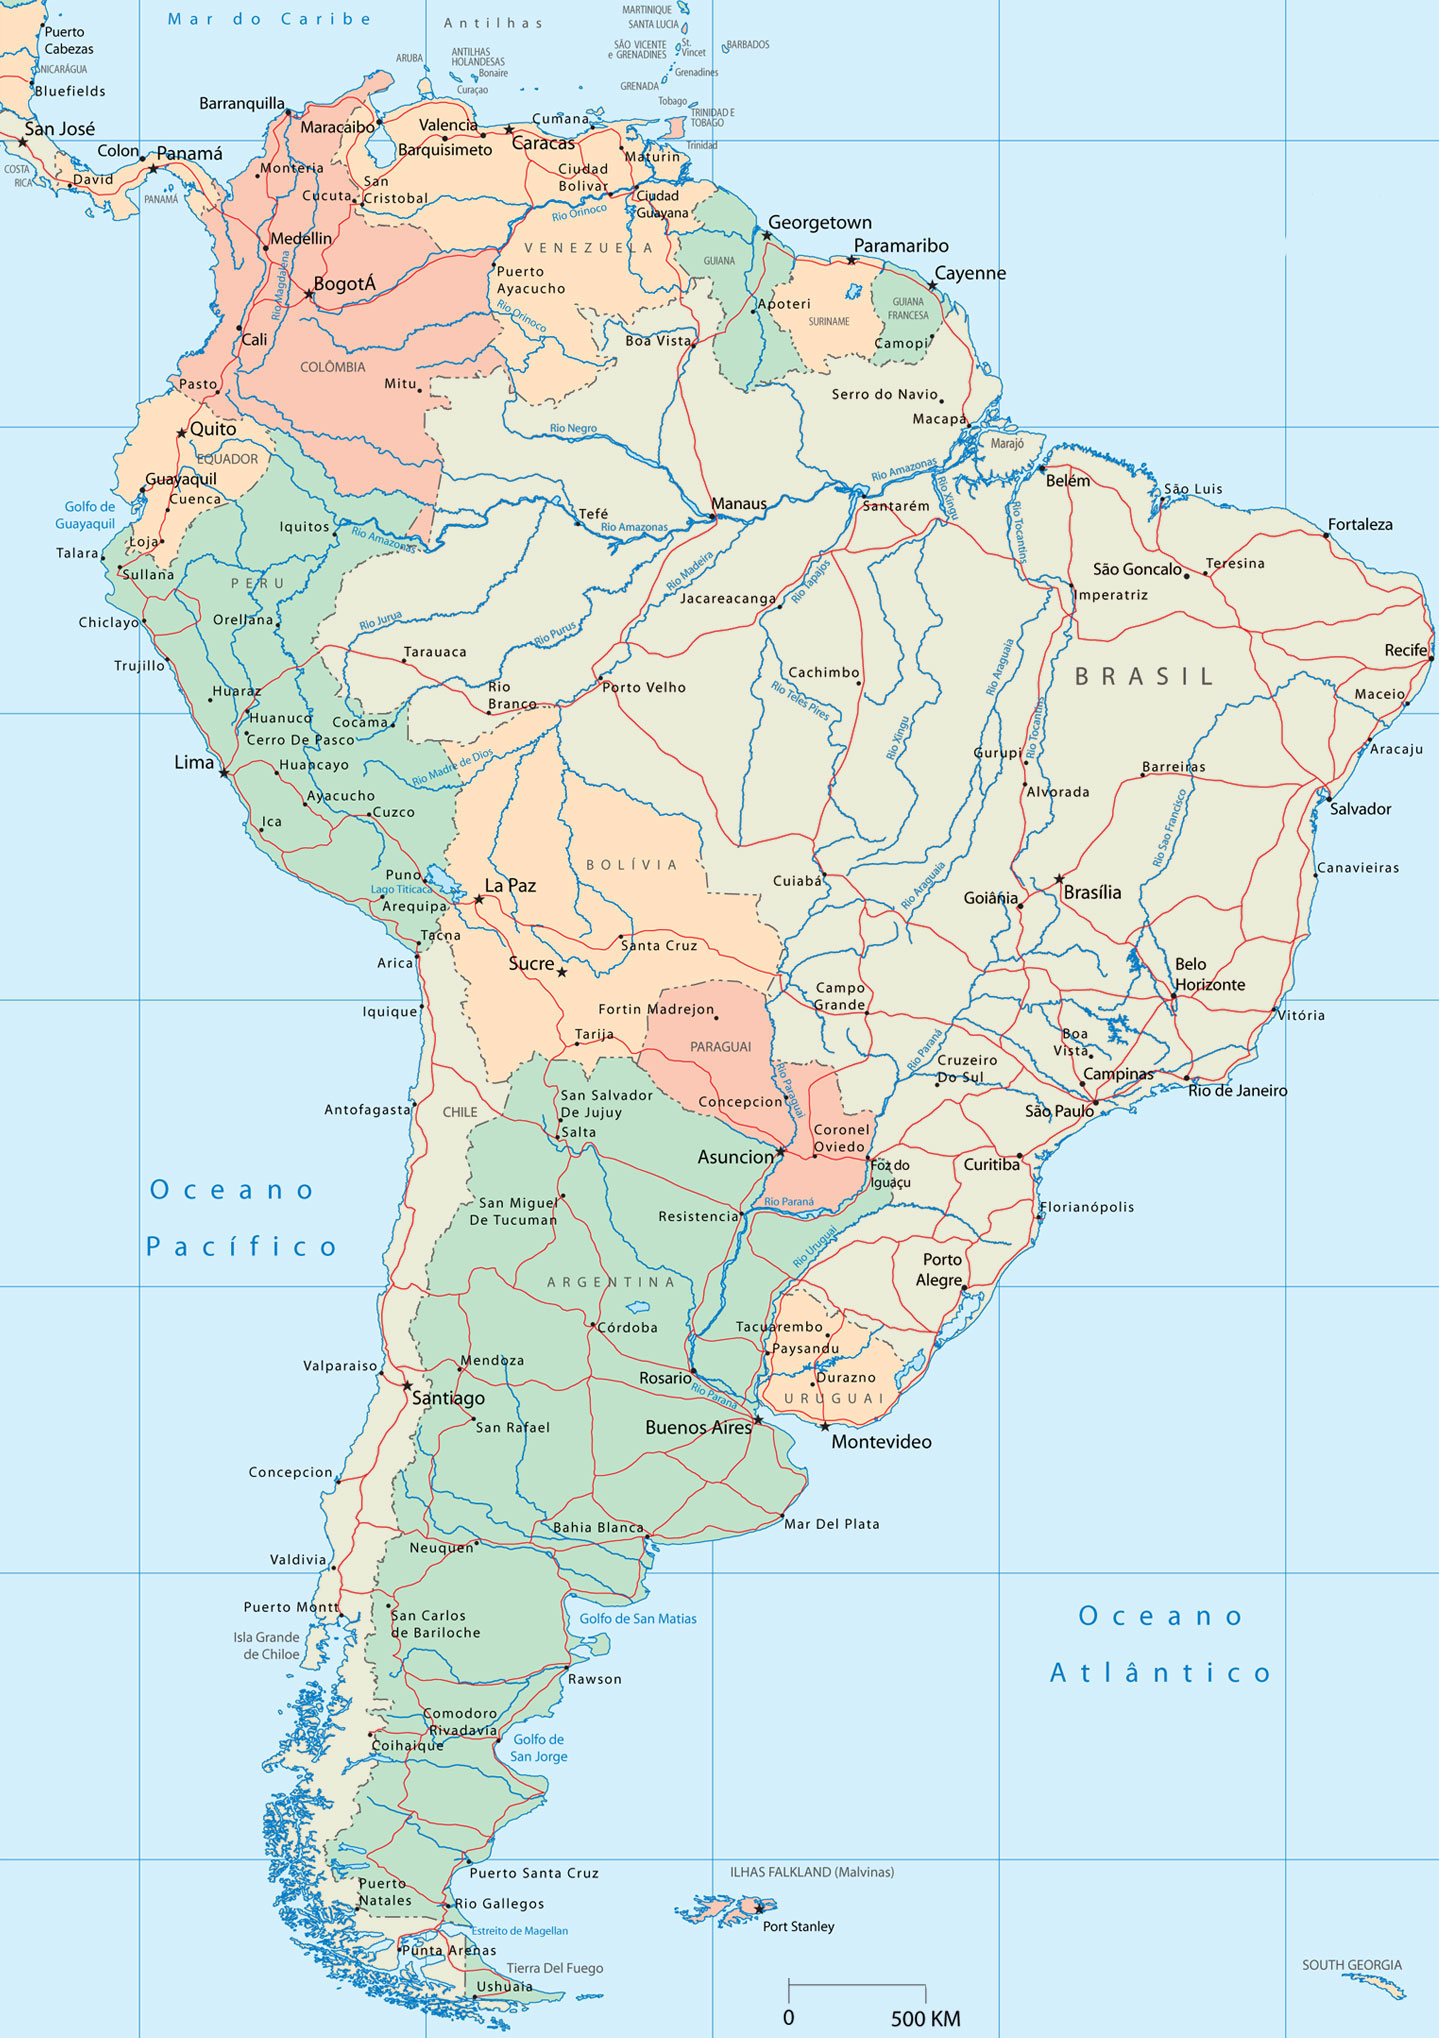 Mapa Politico Da America Mapa America Do Sul Mapa Brasil Mapa Da Images Porn Sex Picture